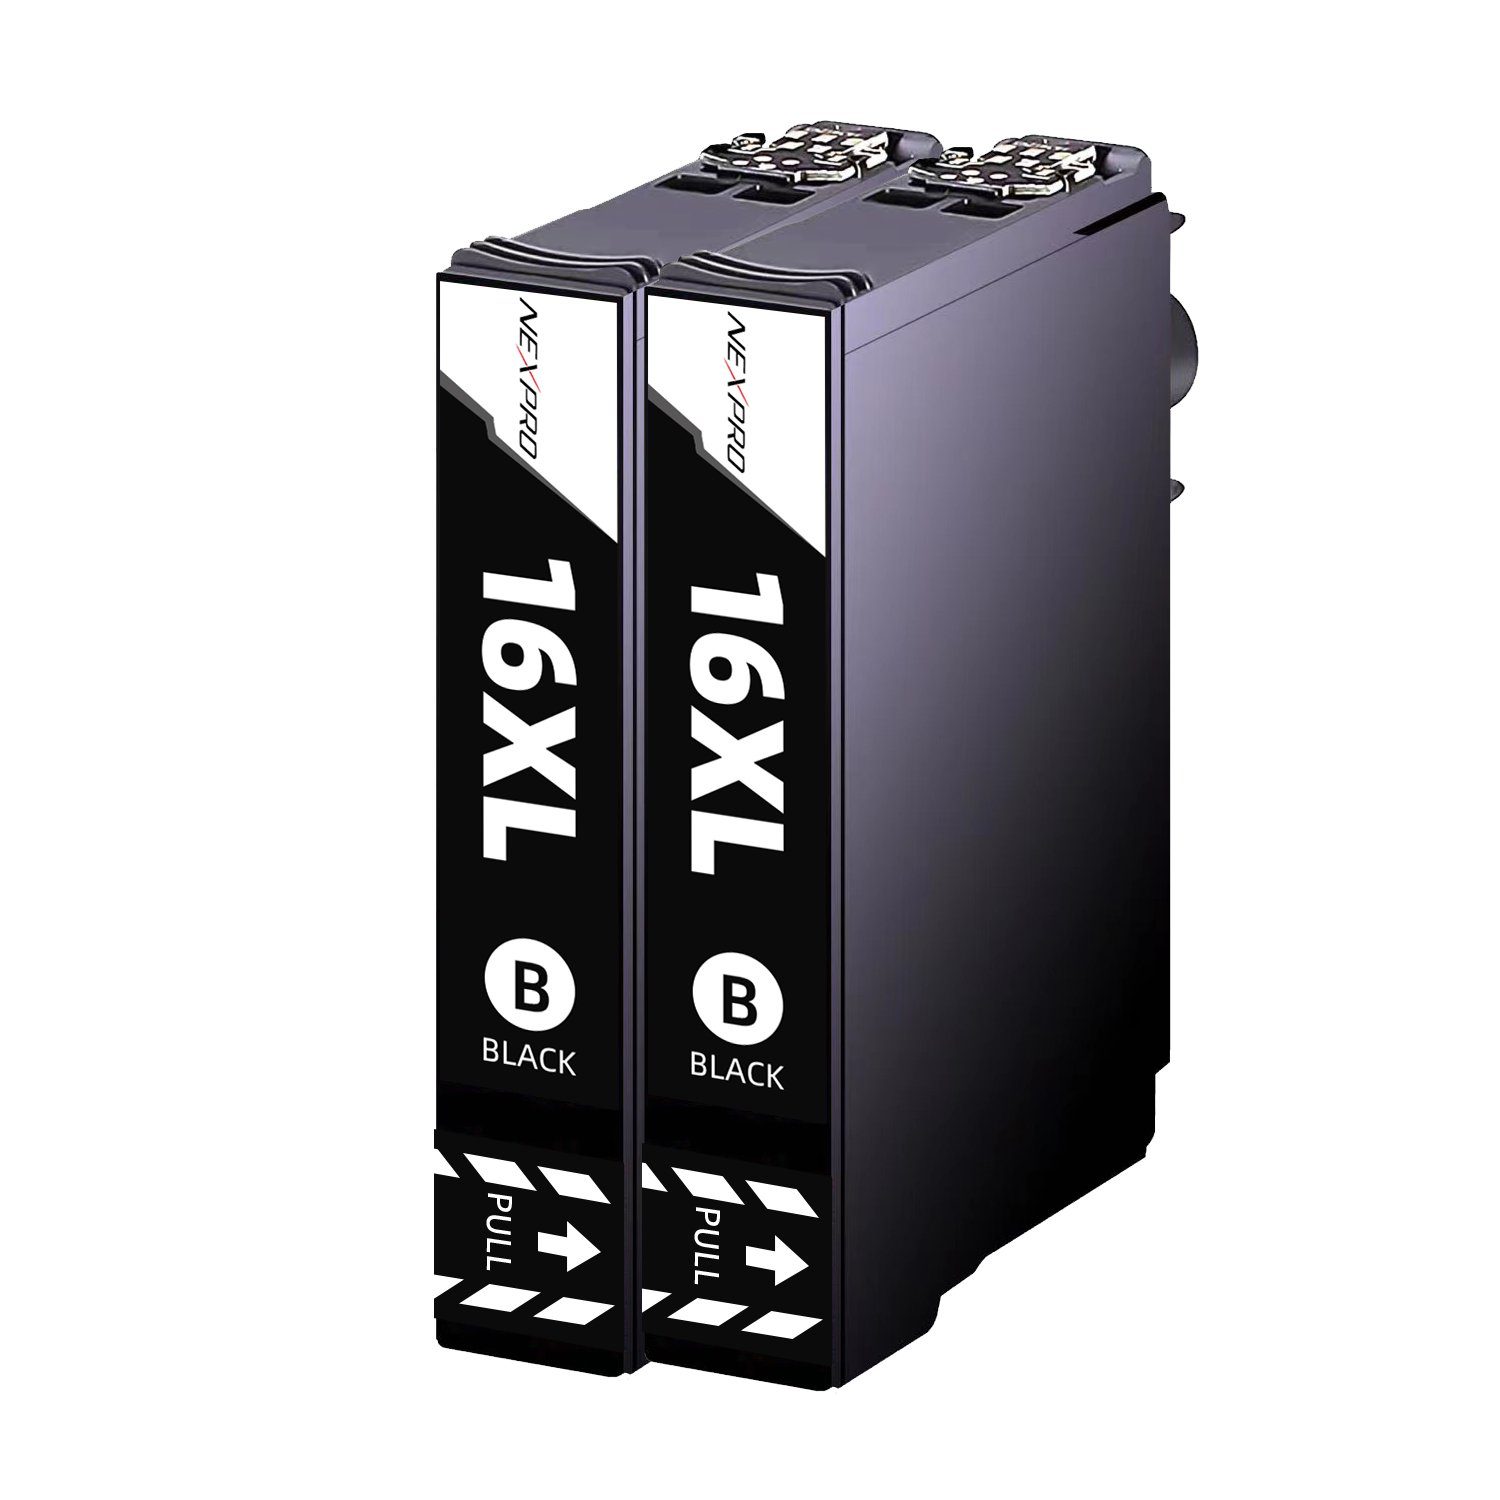 NEXPRO Epson 16 XL Druckerpatronen WF 2760 2750 2630 2530 2510, Schwarz, 2PK Tintenpatrone (Packung, Epson WorkForce 2760 DWF 16XL / C13T16364012, Schwarz)